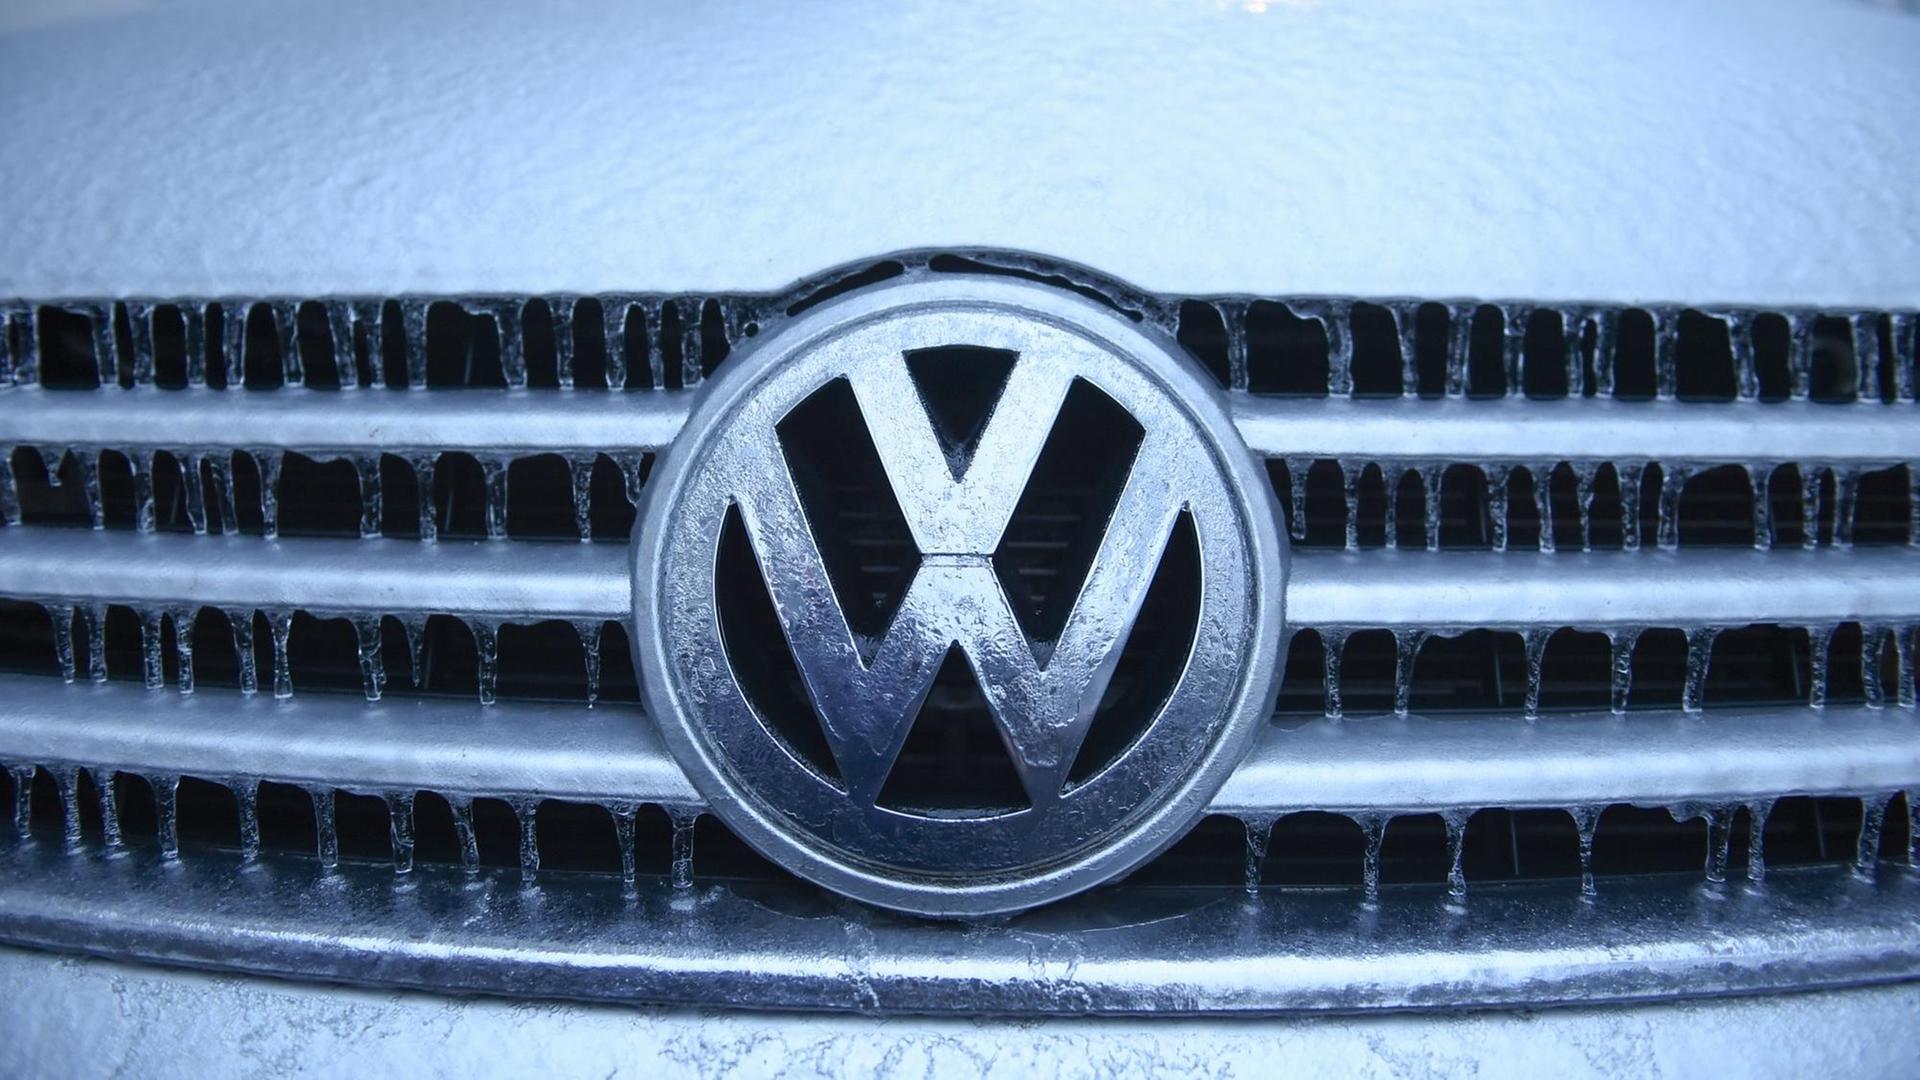 Eiszapfen und Eisschicht haben sich nach einem Eisregen auf einem VW-Logo gebildet.